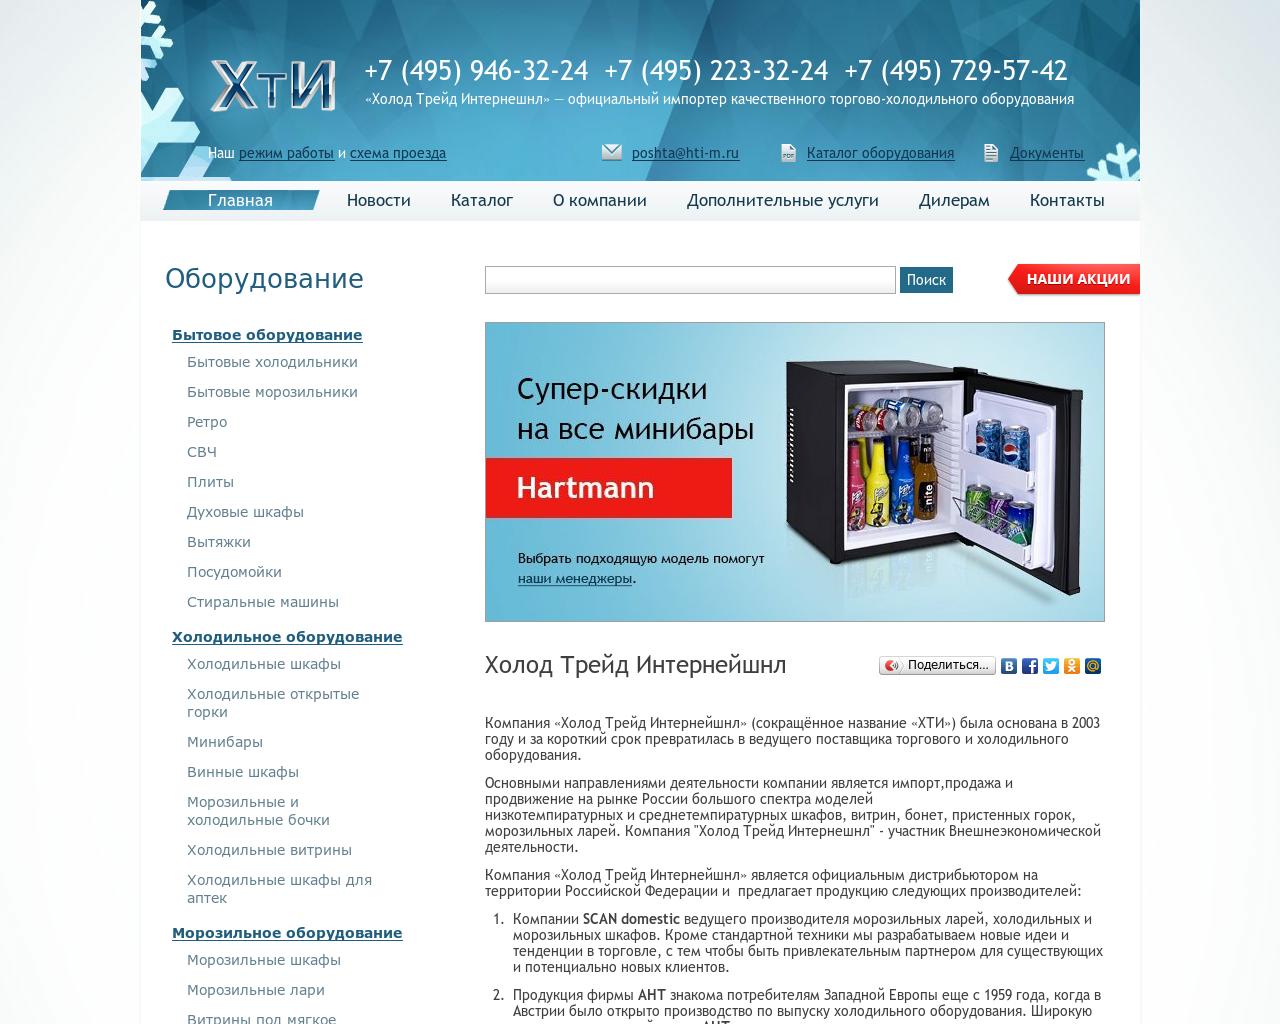 Изображение сайта m-hti.ru в разрешении 1280x1024